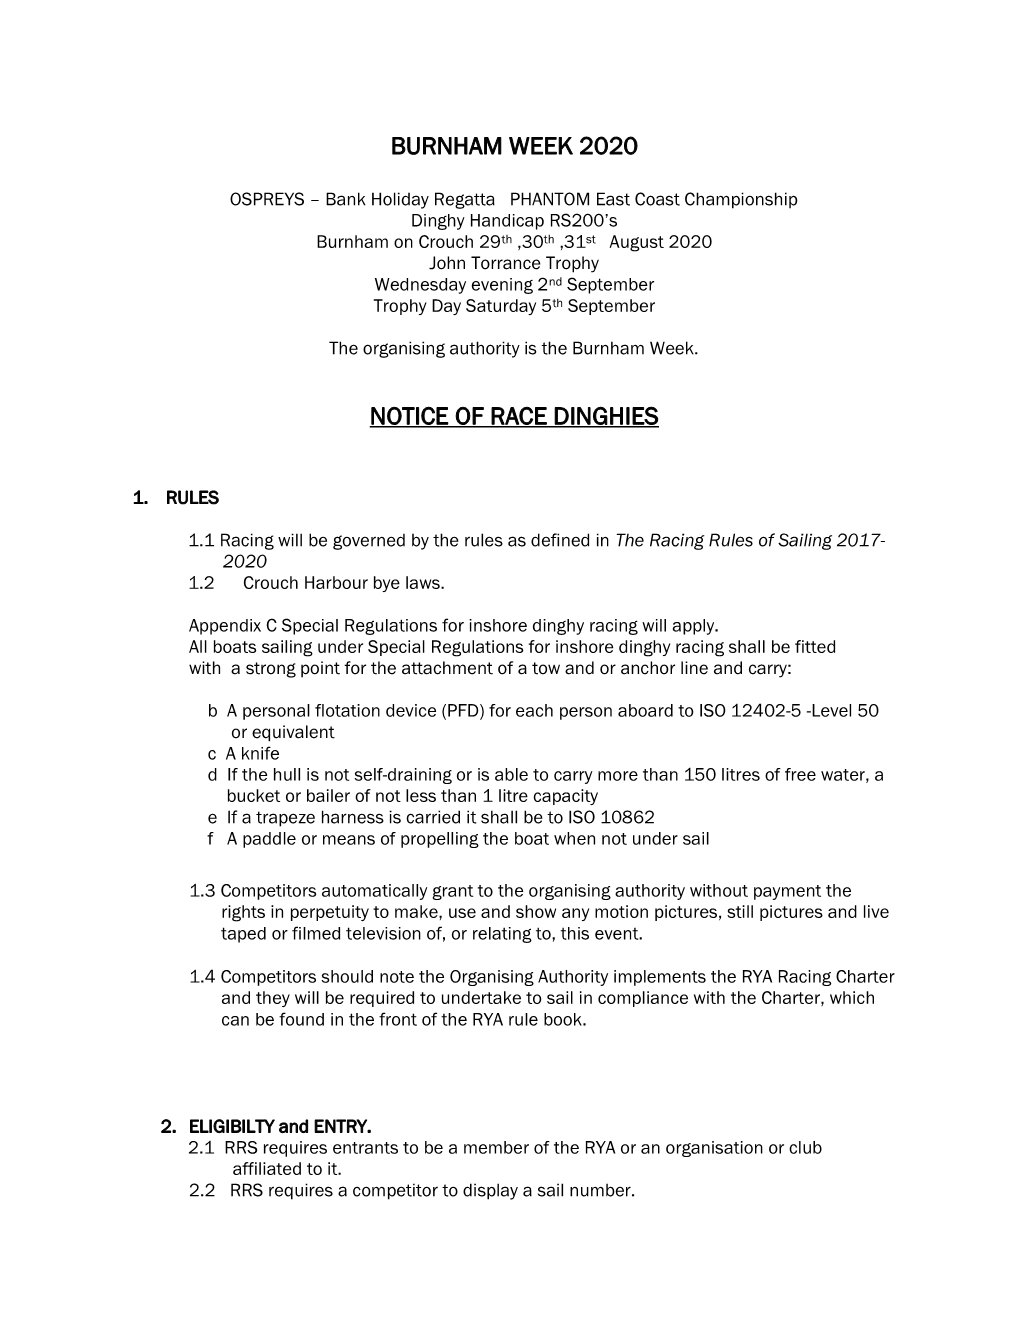 Burnham Week 2020 Notice of Race Dinghies